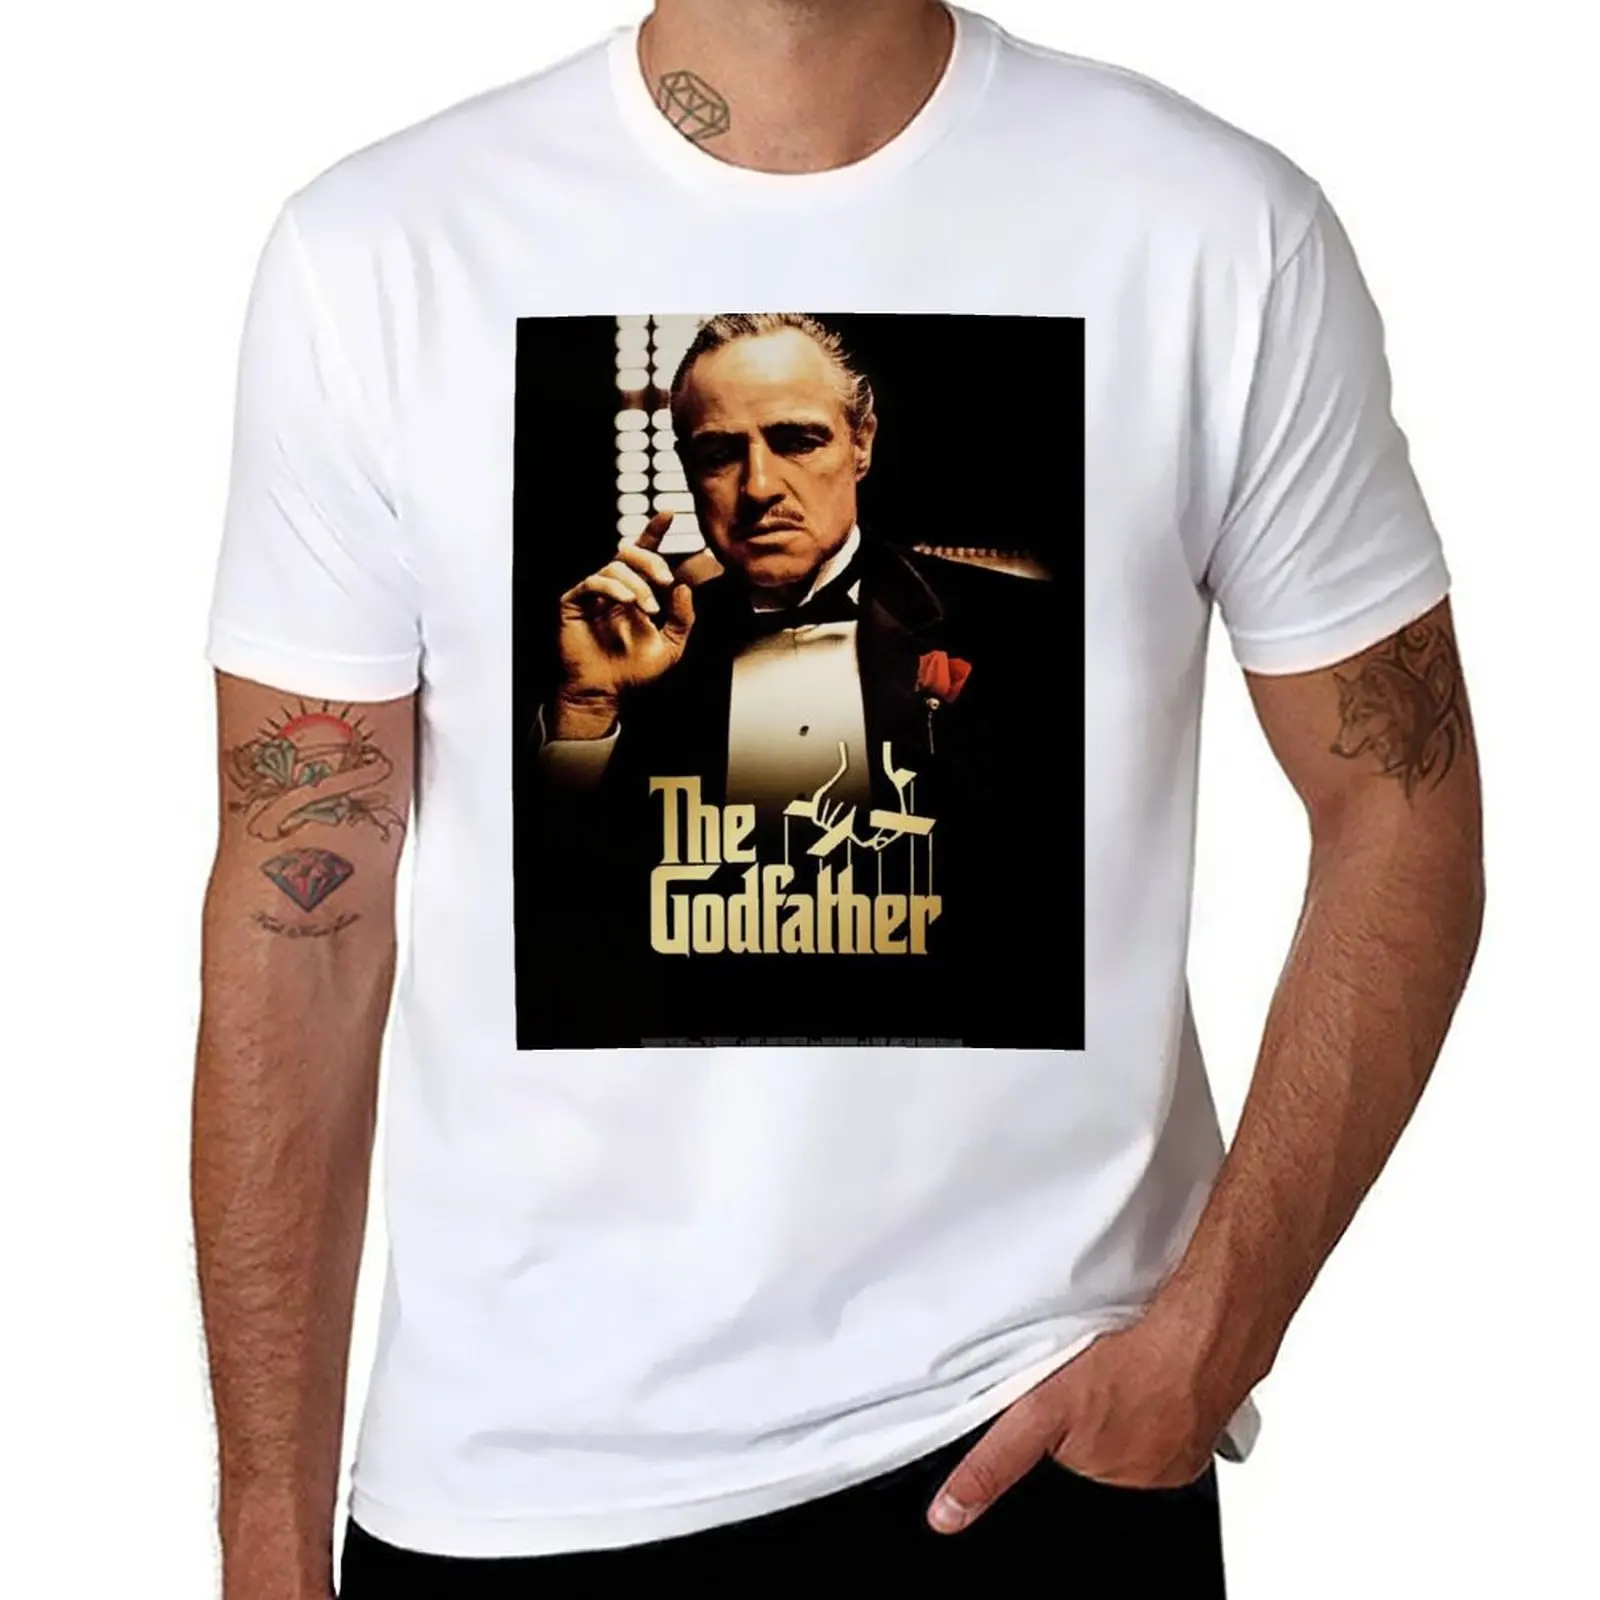 Новая футболка The Godfather, футболки, пустые футболки, возвышенная футболка, футболка для мужчин Изображение 0